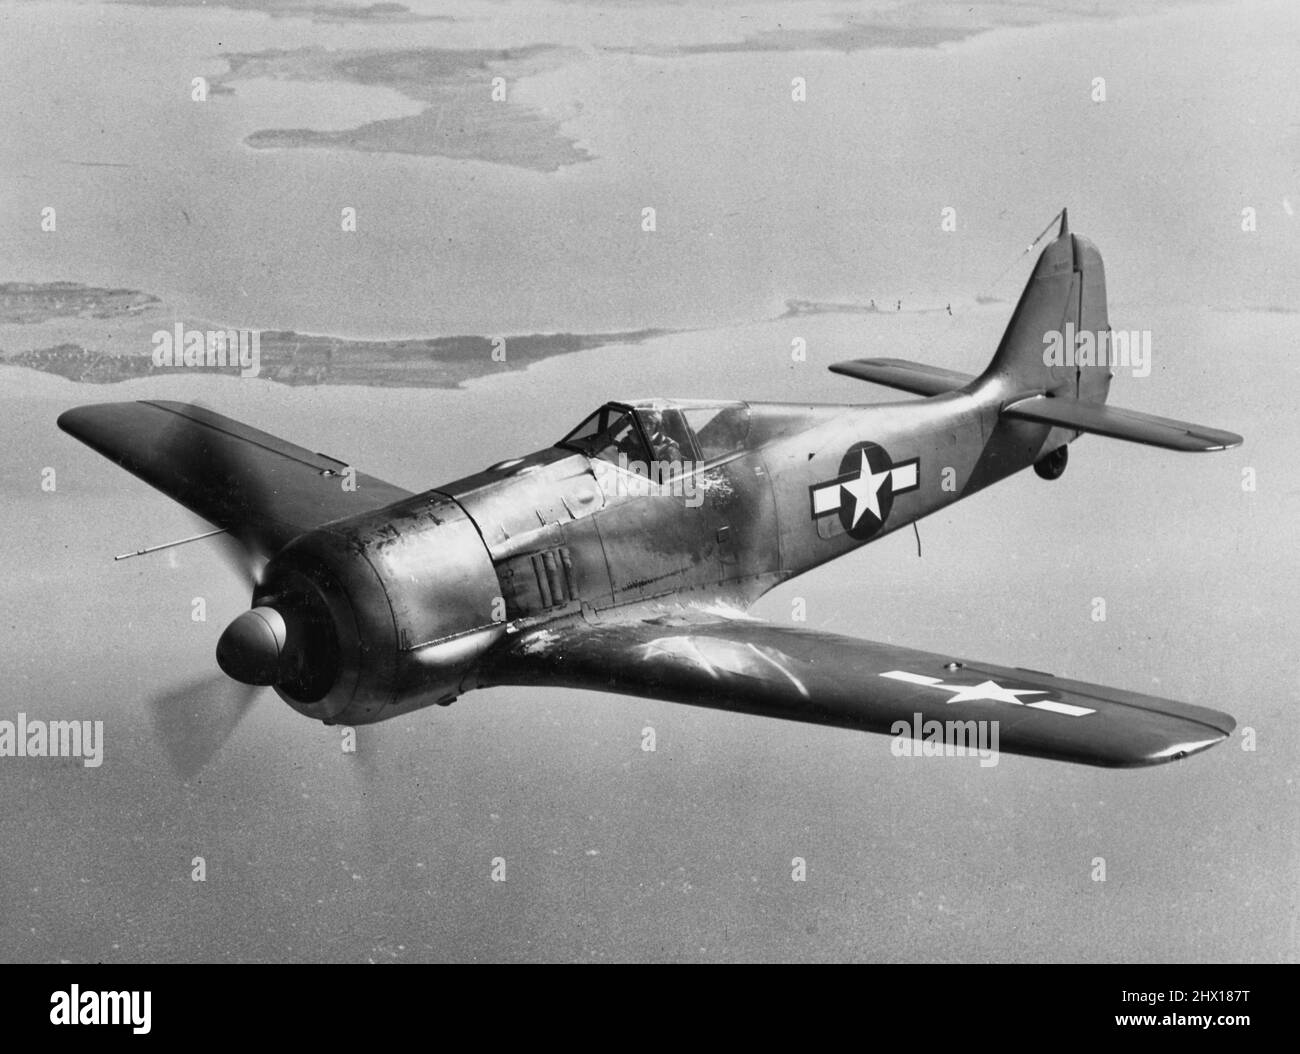 Un combattente tedesco catturato Focke-Wulf FW 190 testato dal Naval Air Test Center statunitense Patuxent River, Maryland (USA), circa nel marzo 1944. L'aeromobile ricevette la marcatura degli Stati Uniti e un camuffamento standard della Marina degli Stati Uniti, con l'armamento apparentemente rimosso. Foto Stock